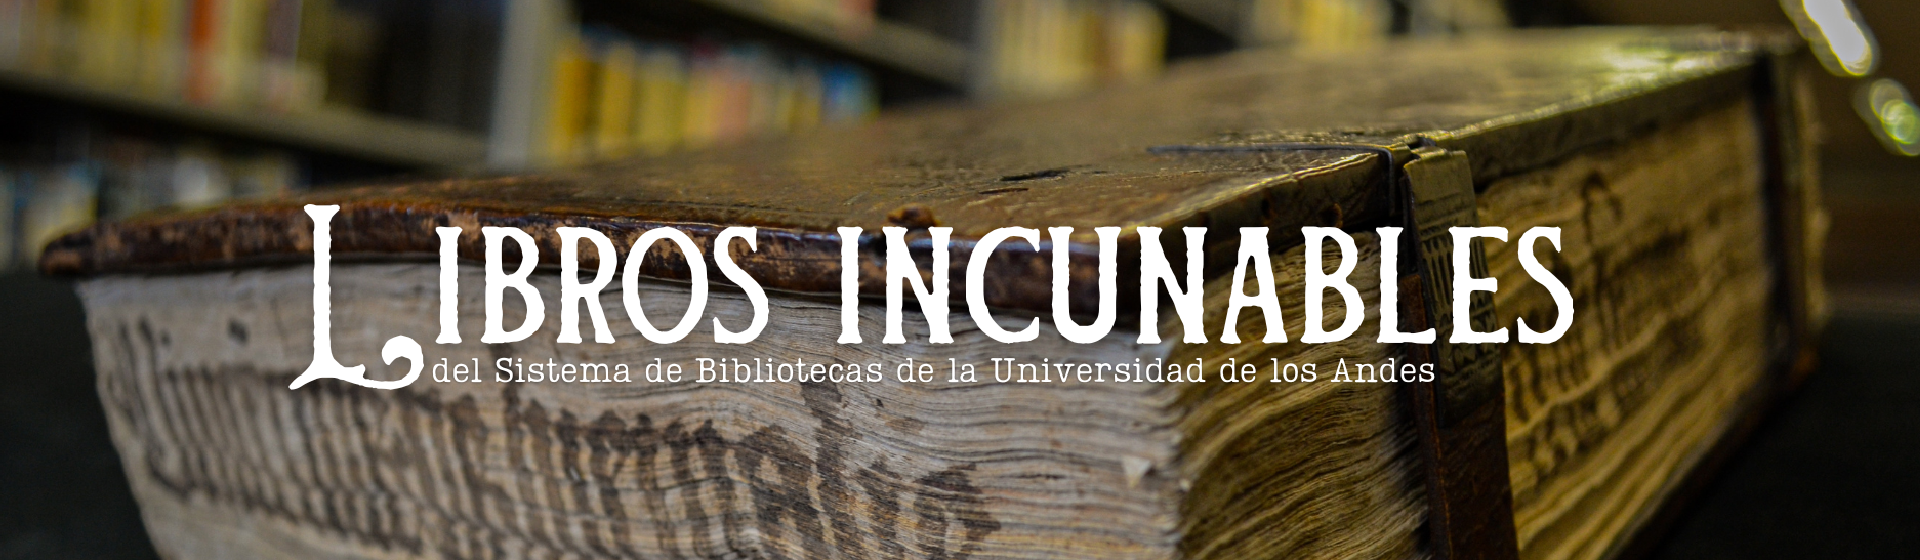 Libros incunables del Sistema de Bibliotecas de la Universidad de los Andes 